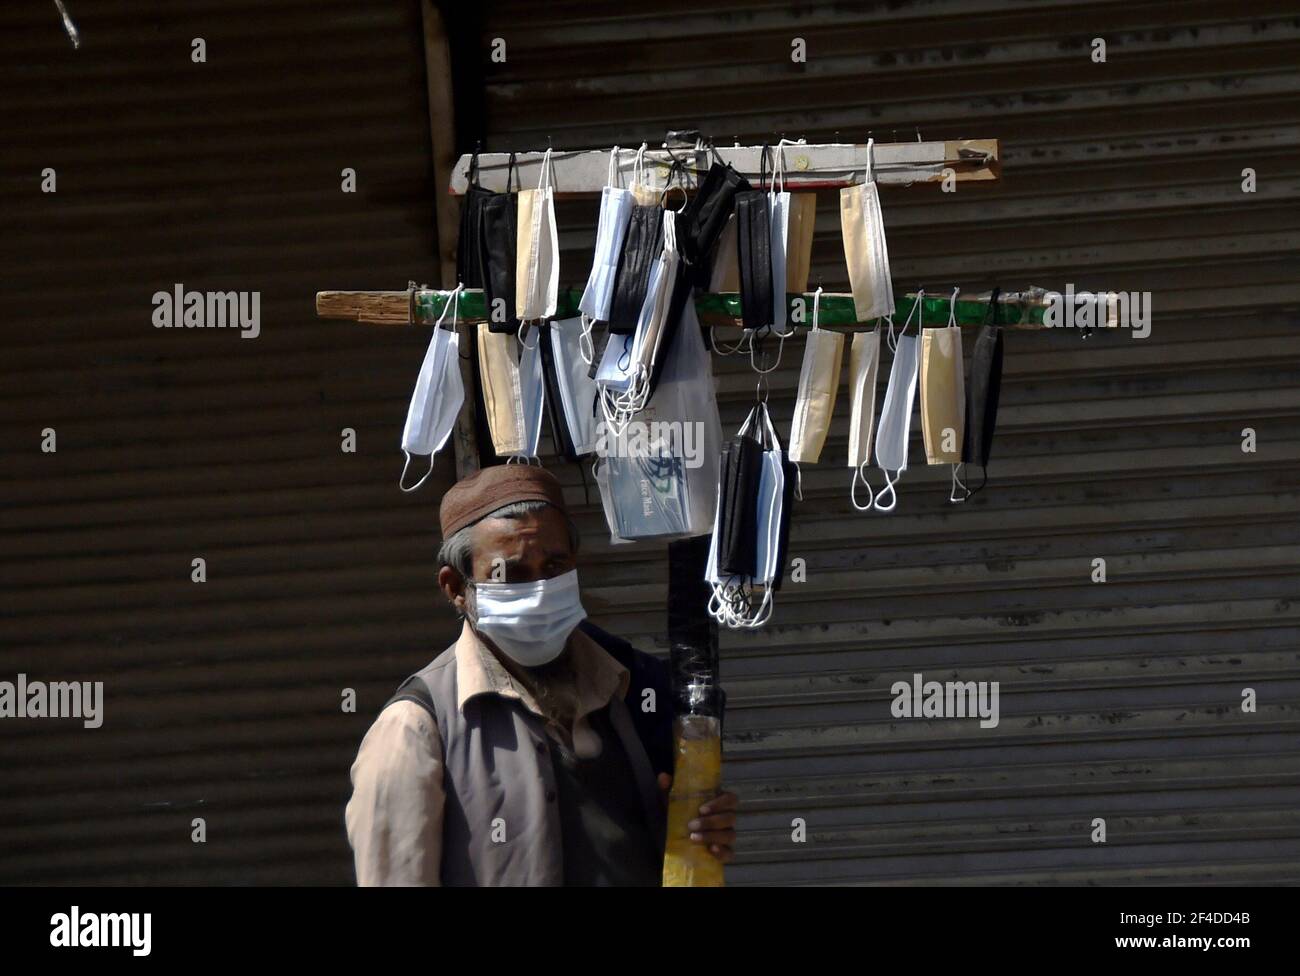 Peshawar. 20th de marzo de 2021. Un vendedor vende máscaras frente a una tienda cerrada en Peshawar, en el noroeste de Pakistán, el 20 de marzo de 2021. Pakistán se enfrenta a una grave tercera ola de virus y el gobierno está tomando medidas para garantizar los procedimientos operativos estándar para controlar la propagación del virus. Crédito: Saeed Ahmad/Xinhua/Alamy Live News Foto de stock